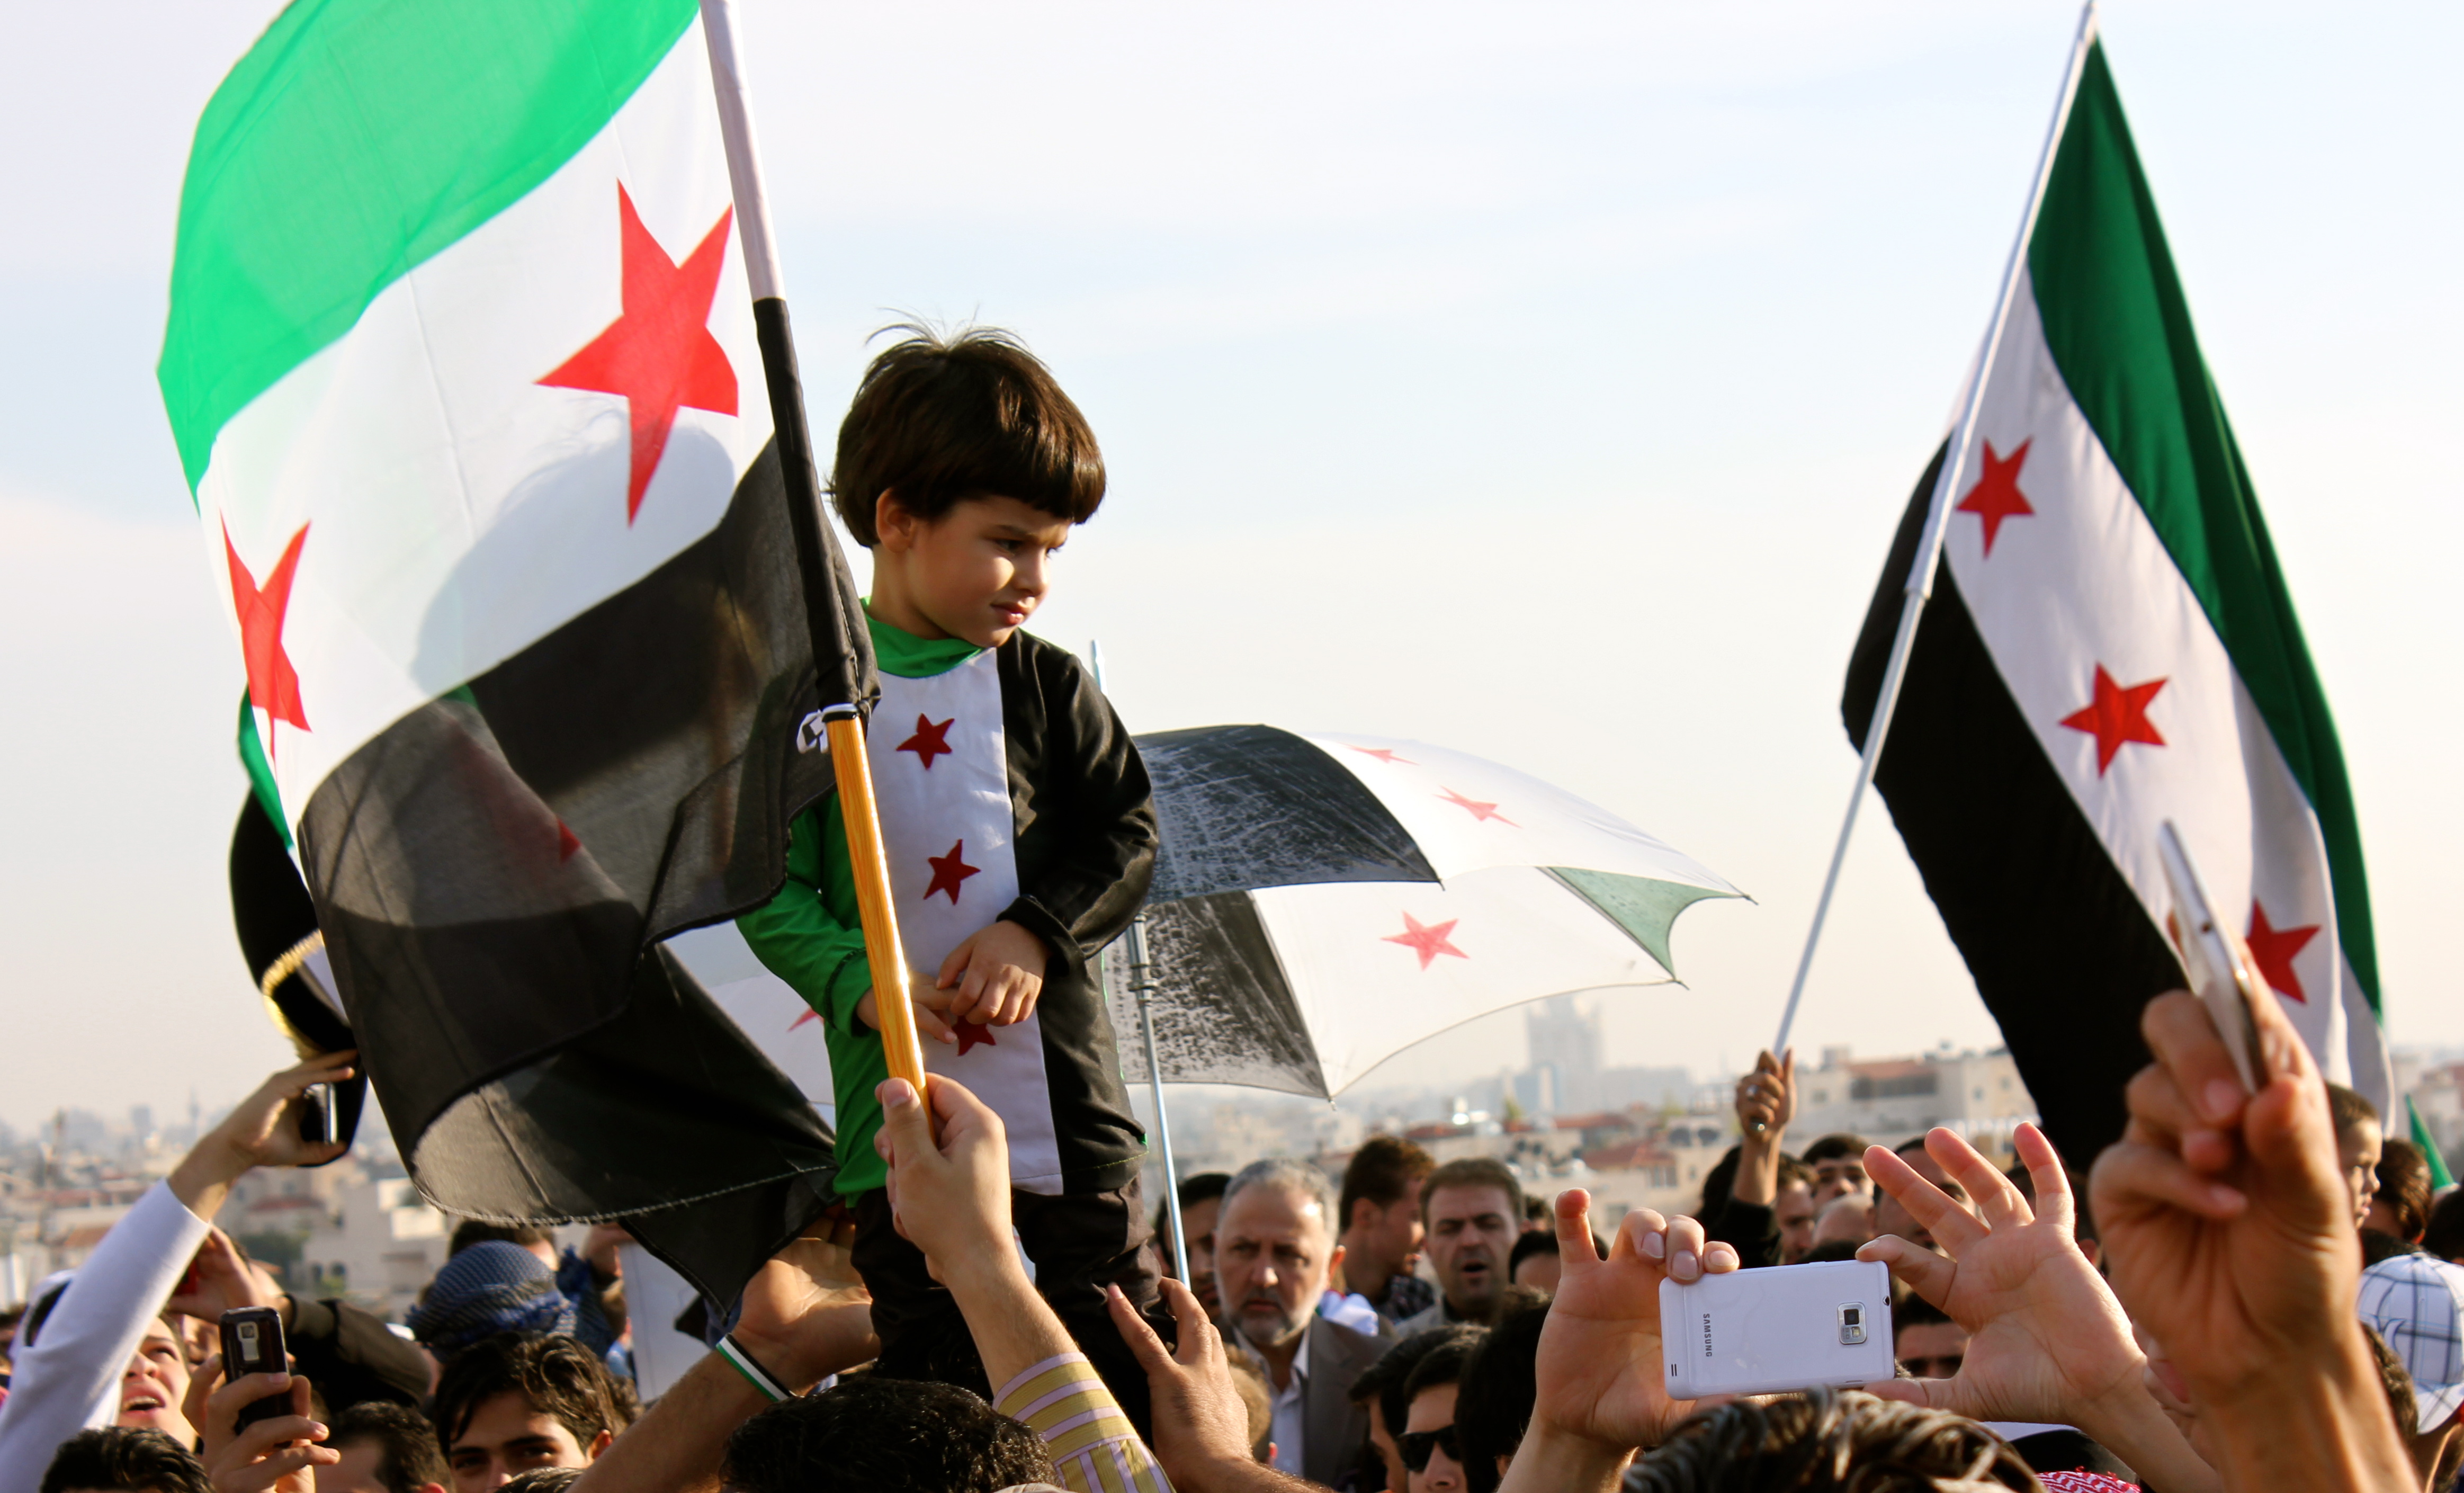 أخبار سوريا_ مسيرات في عدة مدن سورية وعالمية إحياءً للذكرى الرابعة للثورة السورية، وطيران أسد يشن أكثر من 150 غارة جوية على عدة محافظات_ (14-3- 2015)